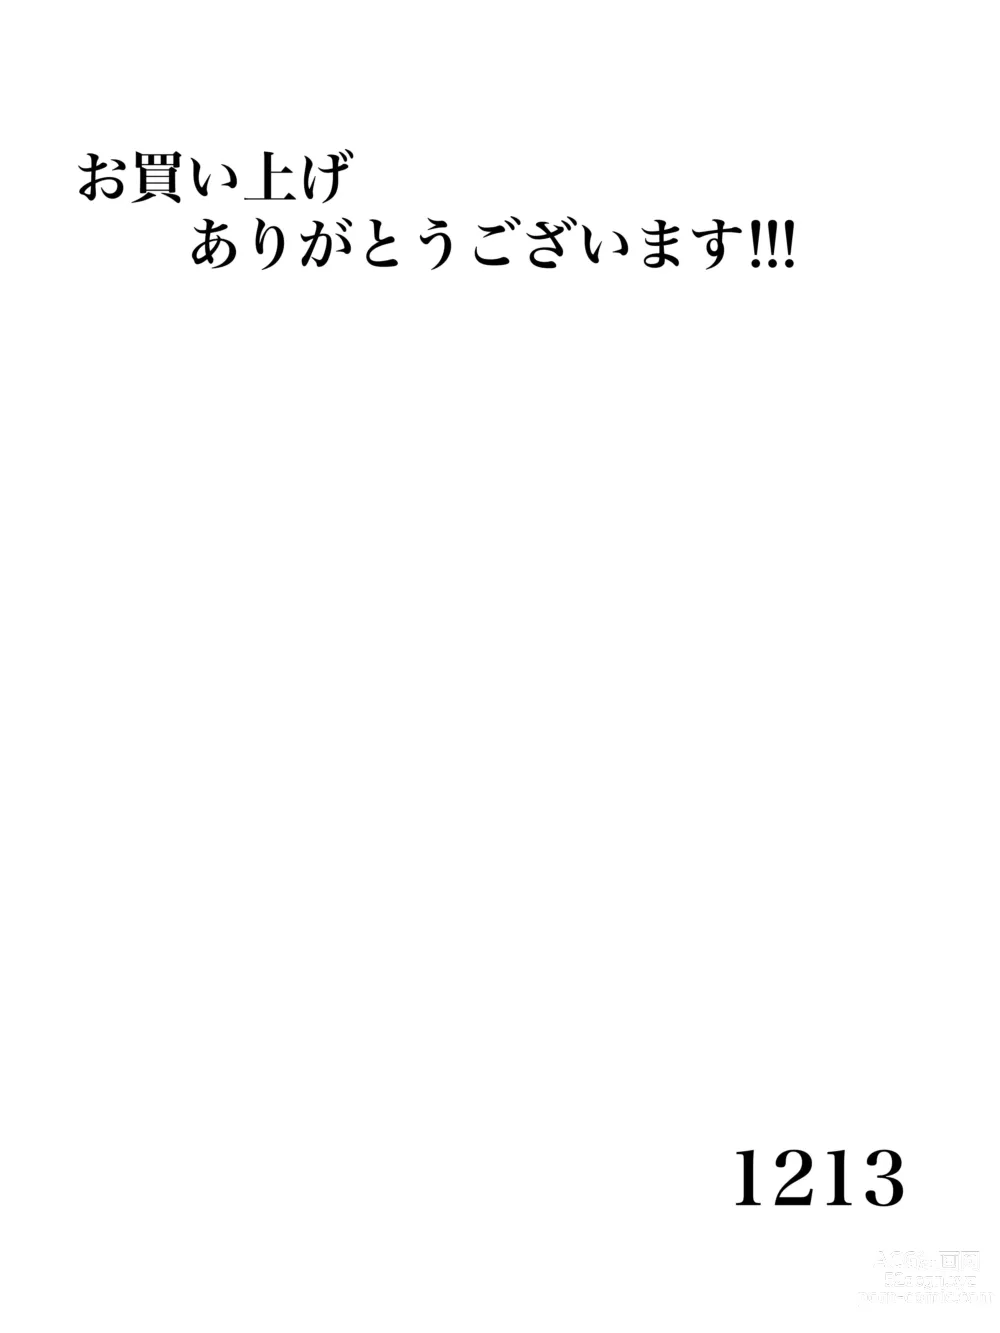 Page 34 of manga zenmetuonnaadobentya